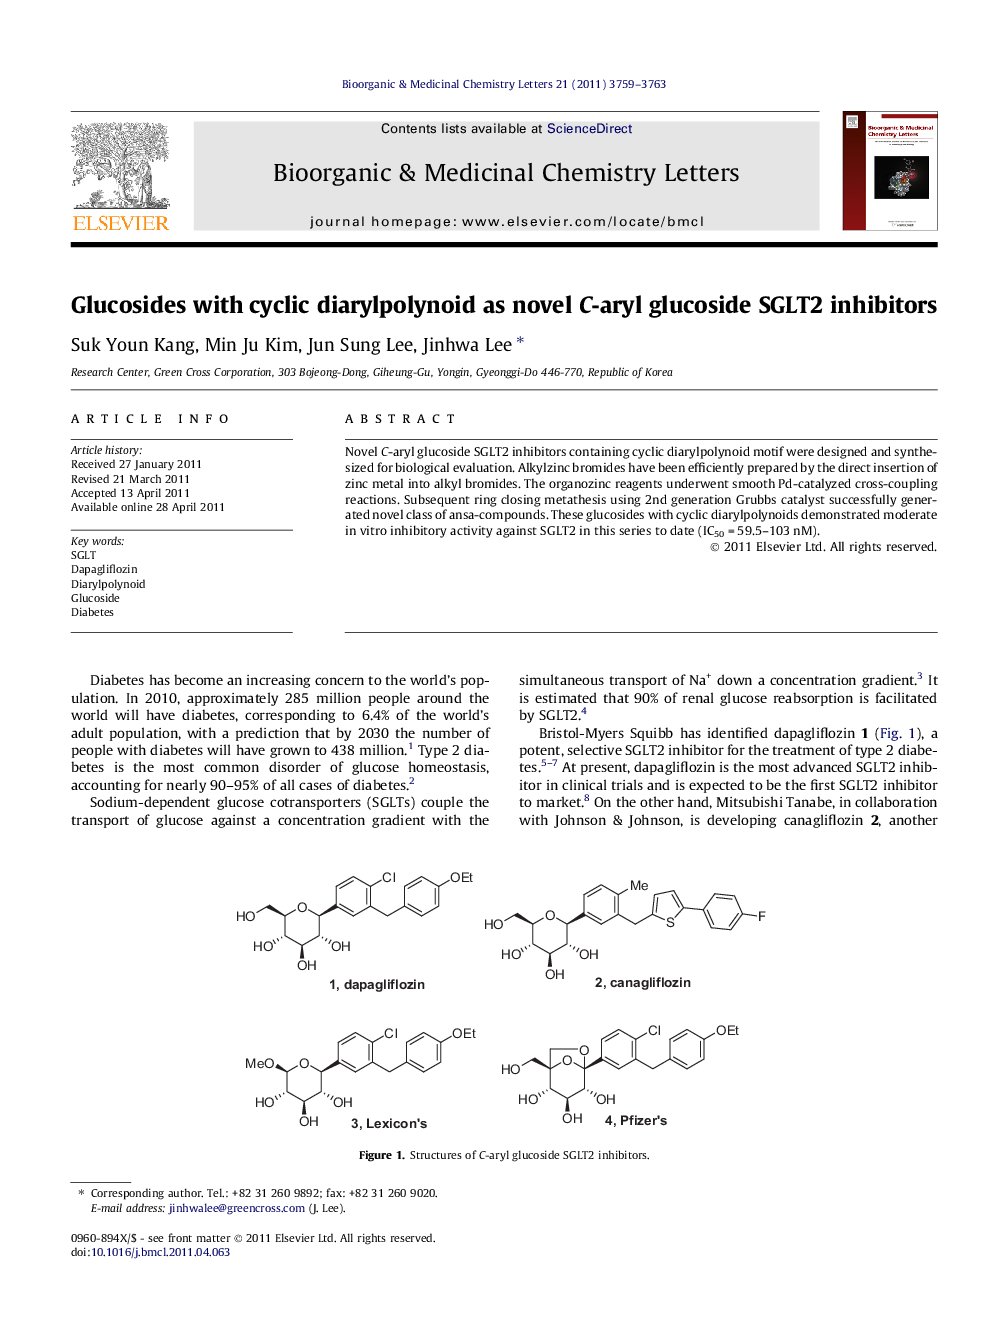 Glucosides with cyclic diarylpolynoid as novel C-aryl glucoside SGLT2 inhibitors